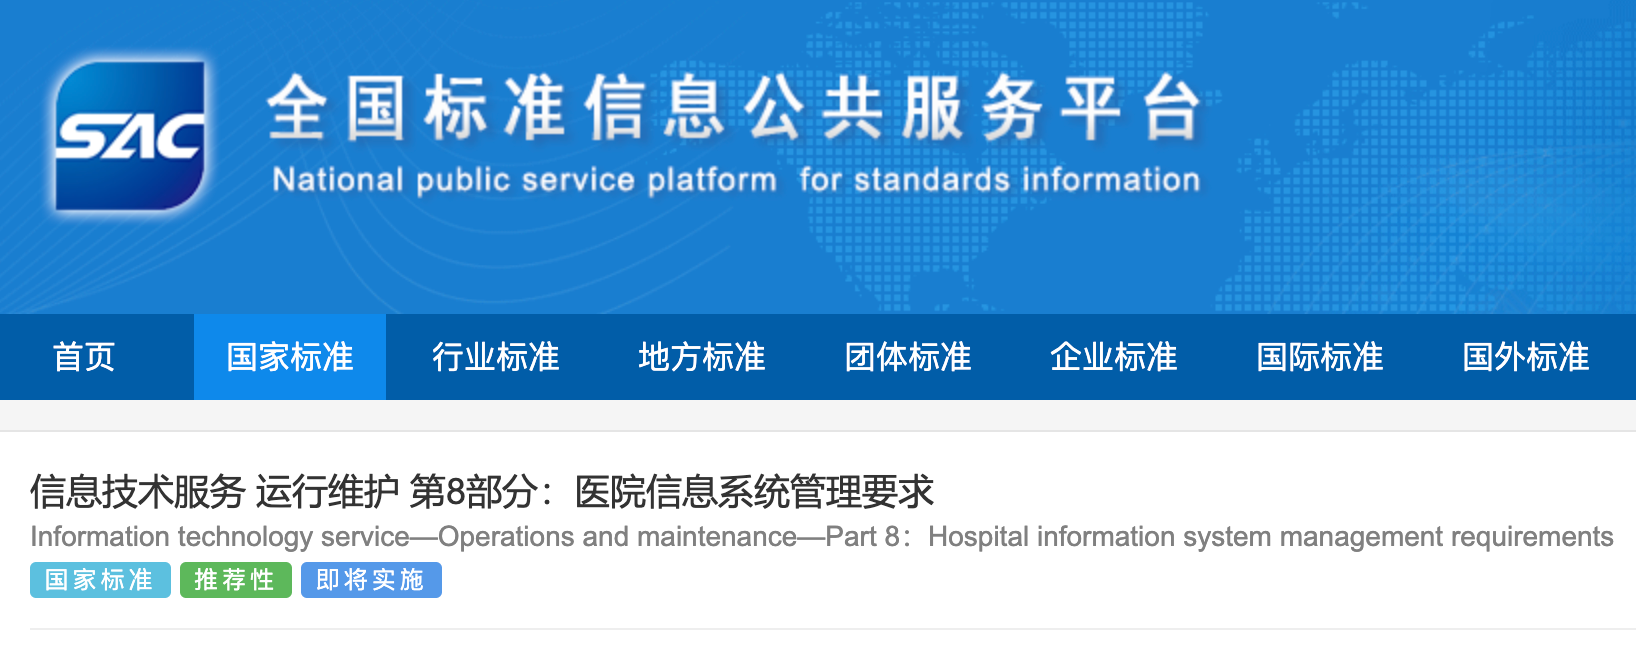 《医院信息系统管理要求》国家标准正式发布